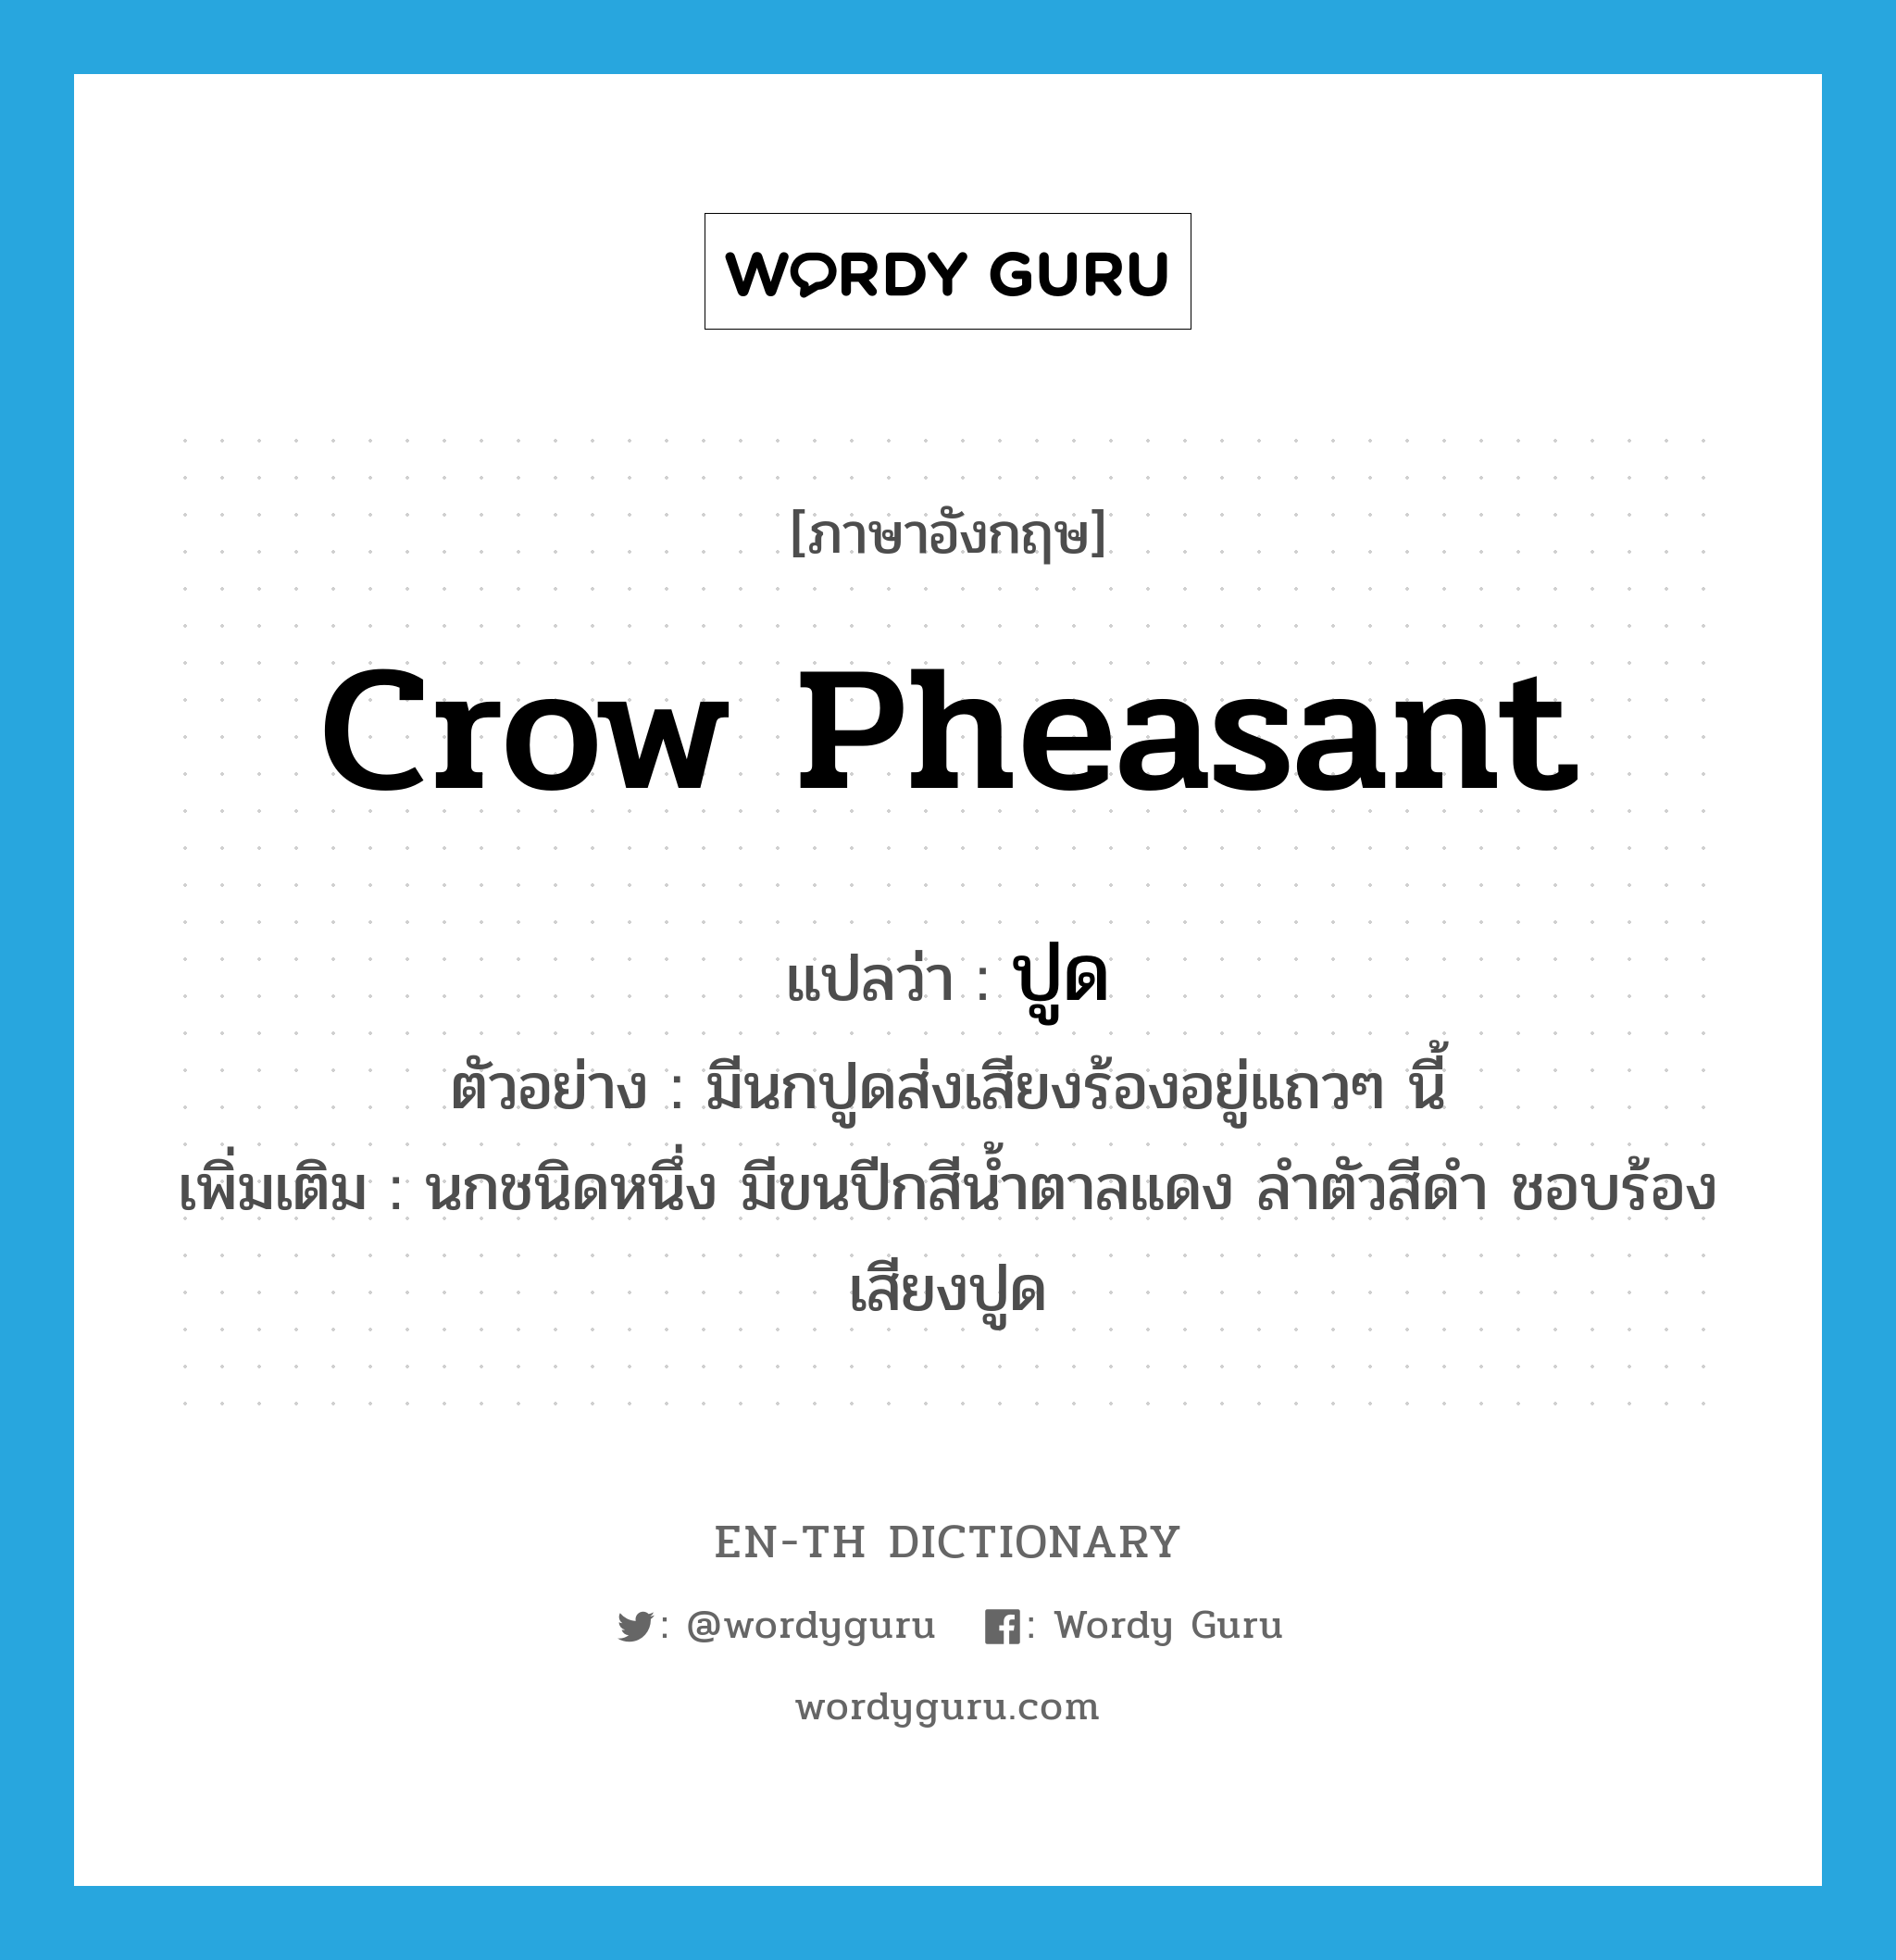 crow pheasant แปลว่า?, คำศัพท์ภาษาอังกฤษ crow pheasant แปลว่า ปูด ประเภท N ตัวอย่าง มีนกปูดส่งเสียงร้องอยู่แถวๆ นี้ เพิ่มเติม นกชนิดหนึ่ง มีขนปีกสีน้ำตาลแดง ลำตัวสีดำ ชอบร้องเสียงปูด หมวด N